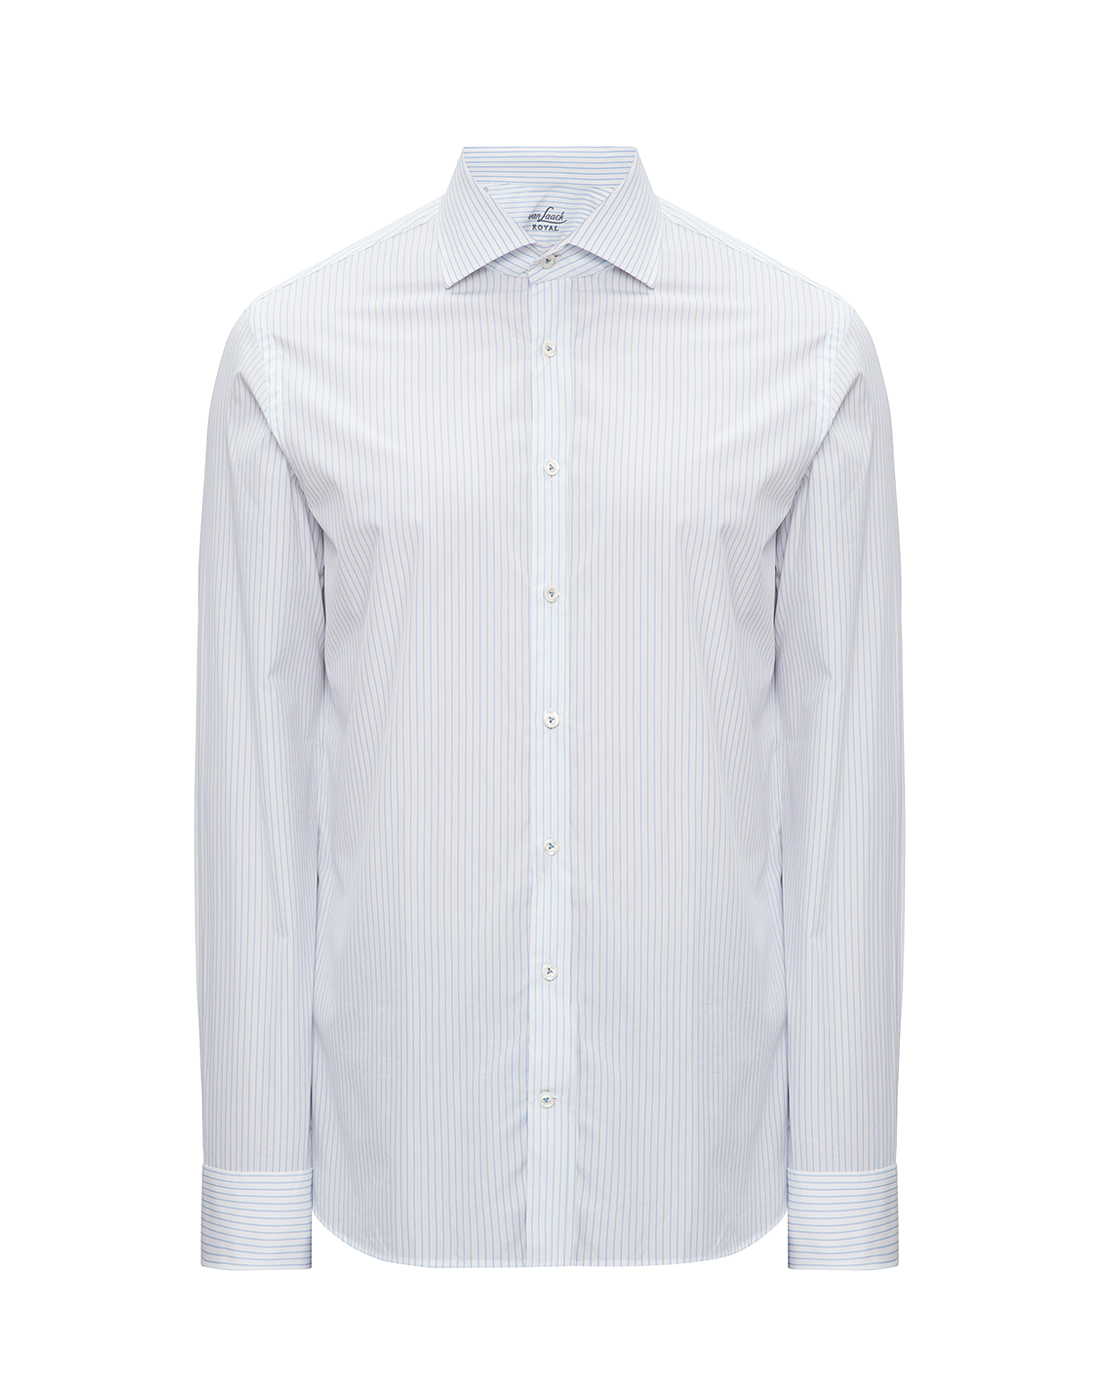 Мужская белая рубашка в полоску Van Laack S151122/720-1